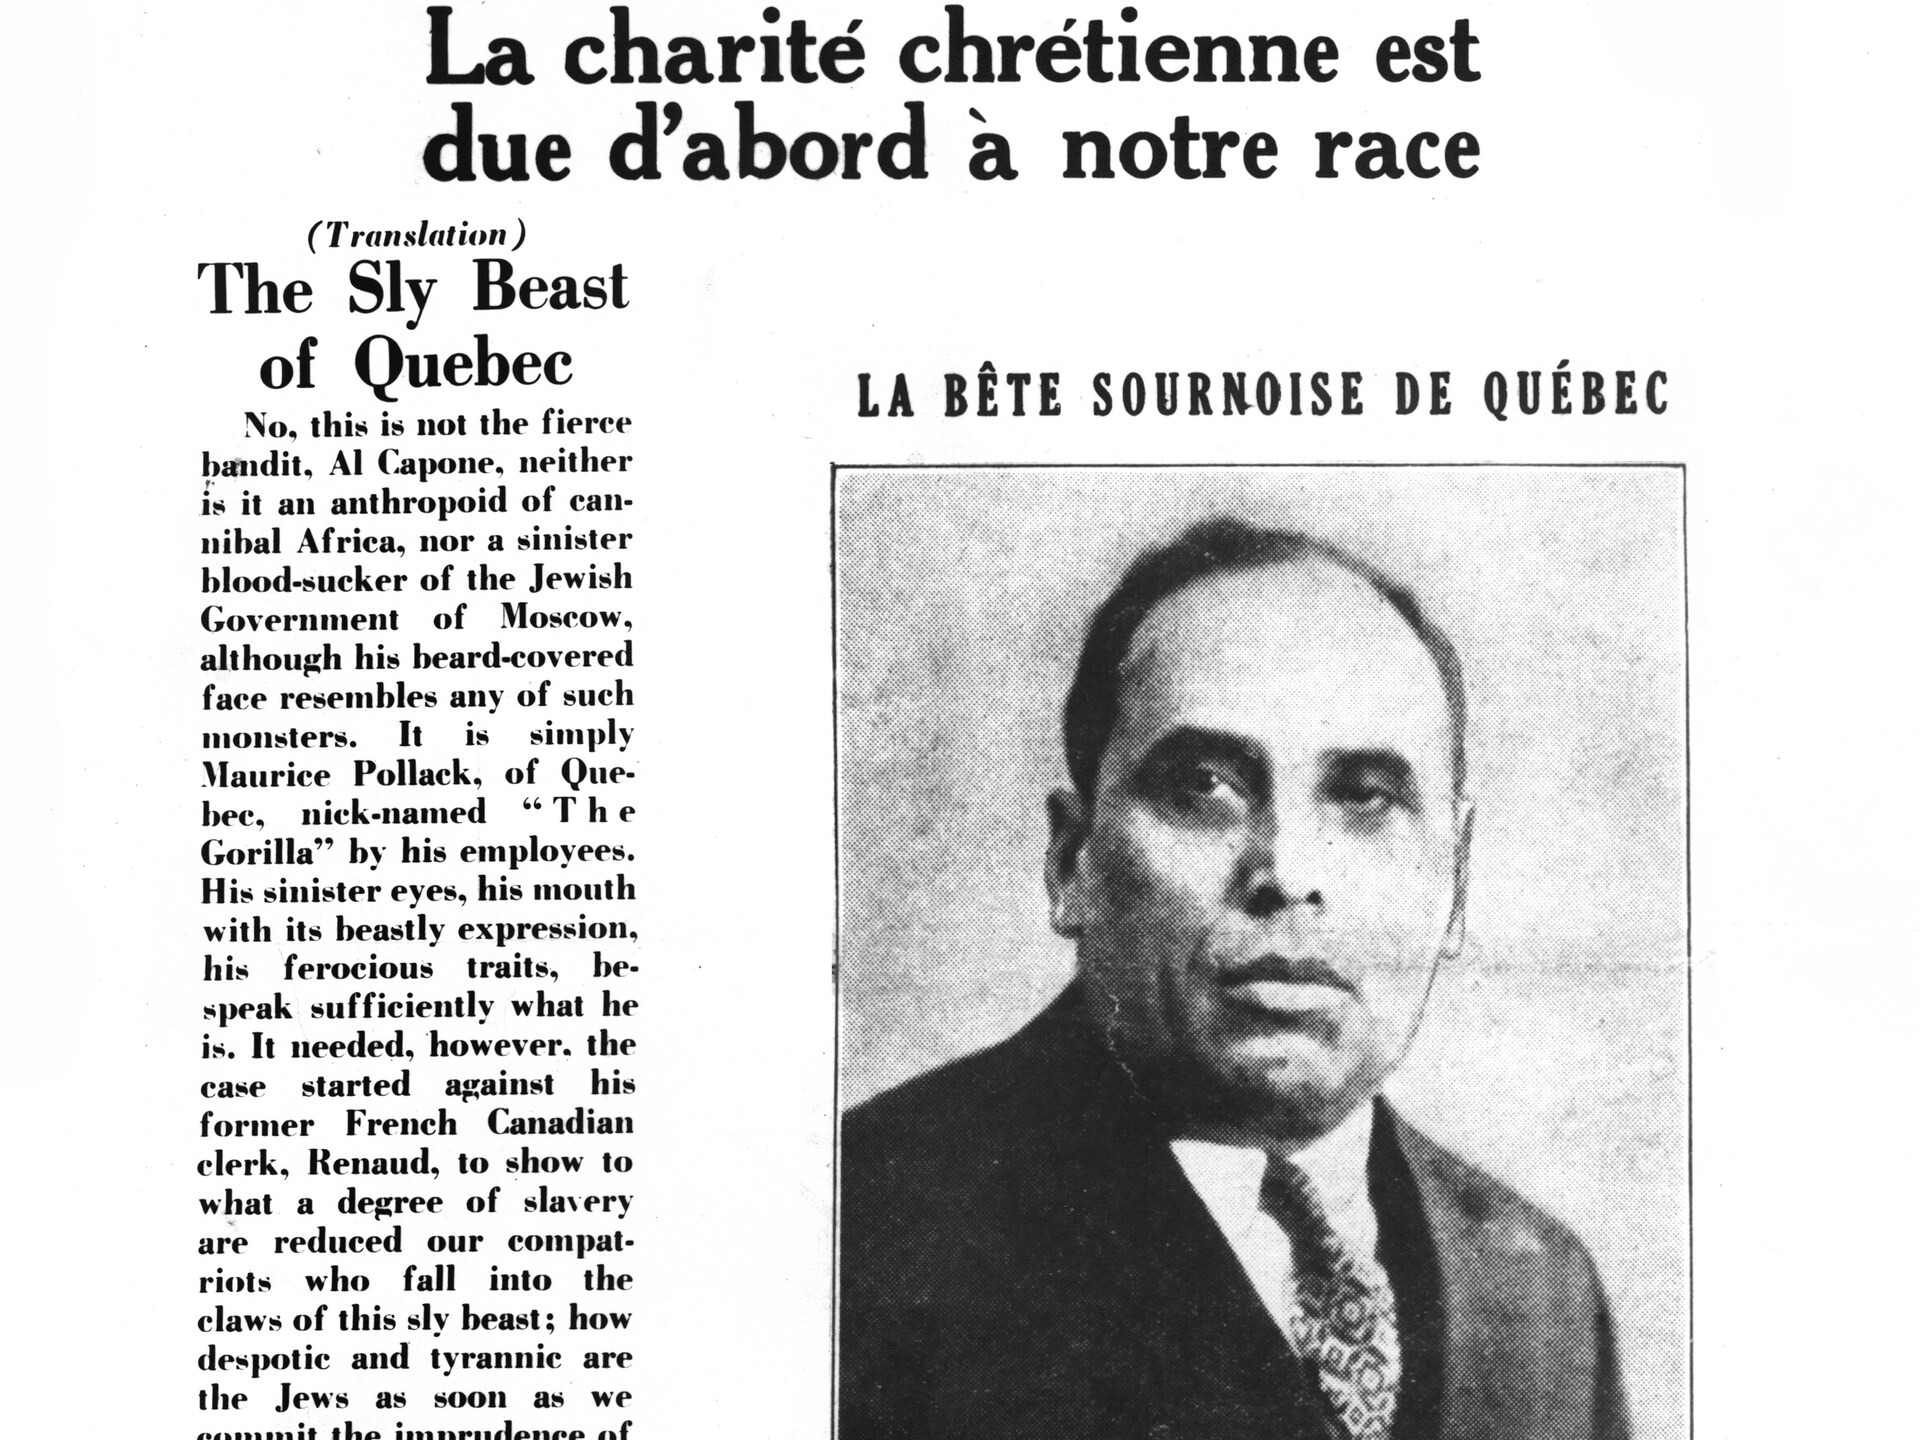 « La charité chrétienne est d'abord due à notre race », titre le journal « Le Patriote » en 1933. Le journal affiche en une une photo de Maurice Pollack, sur-titrée « La bête sournoise de Québec » avec une traduction anglaise en grosses lettres à gauche de l'article.